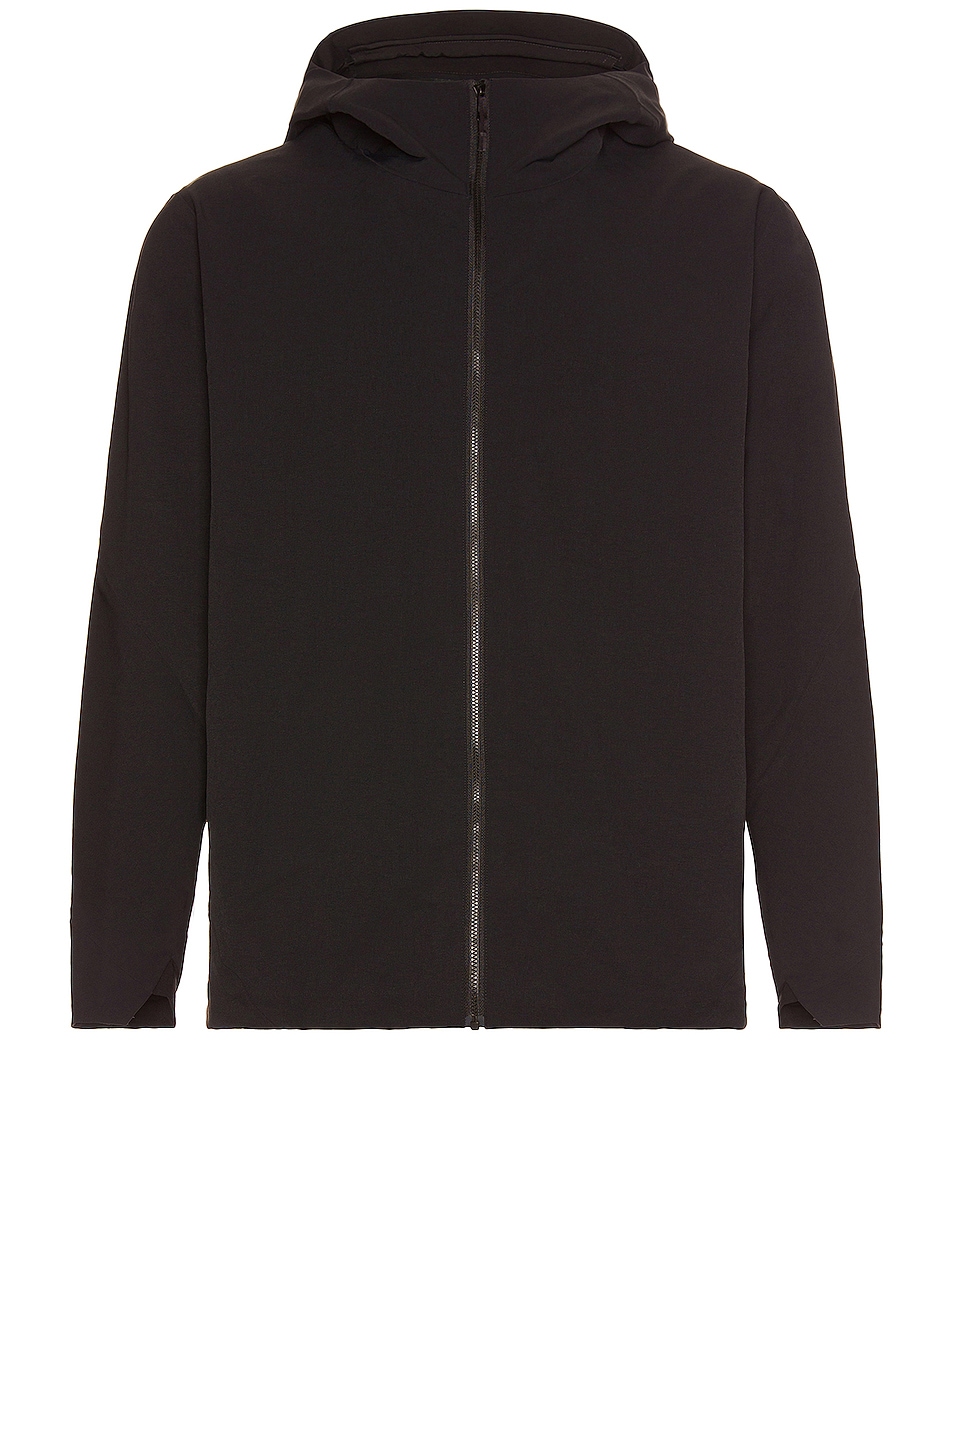 Image 1 of Veilance Isogon MX Jacket in Black